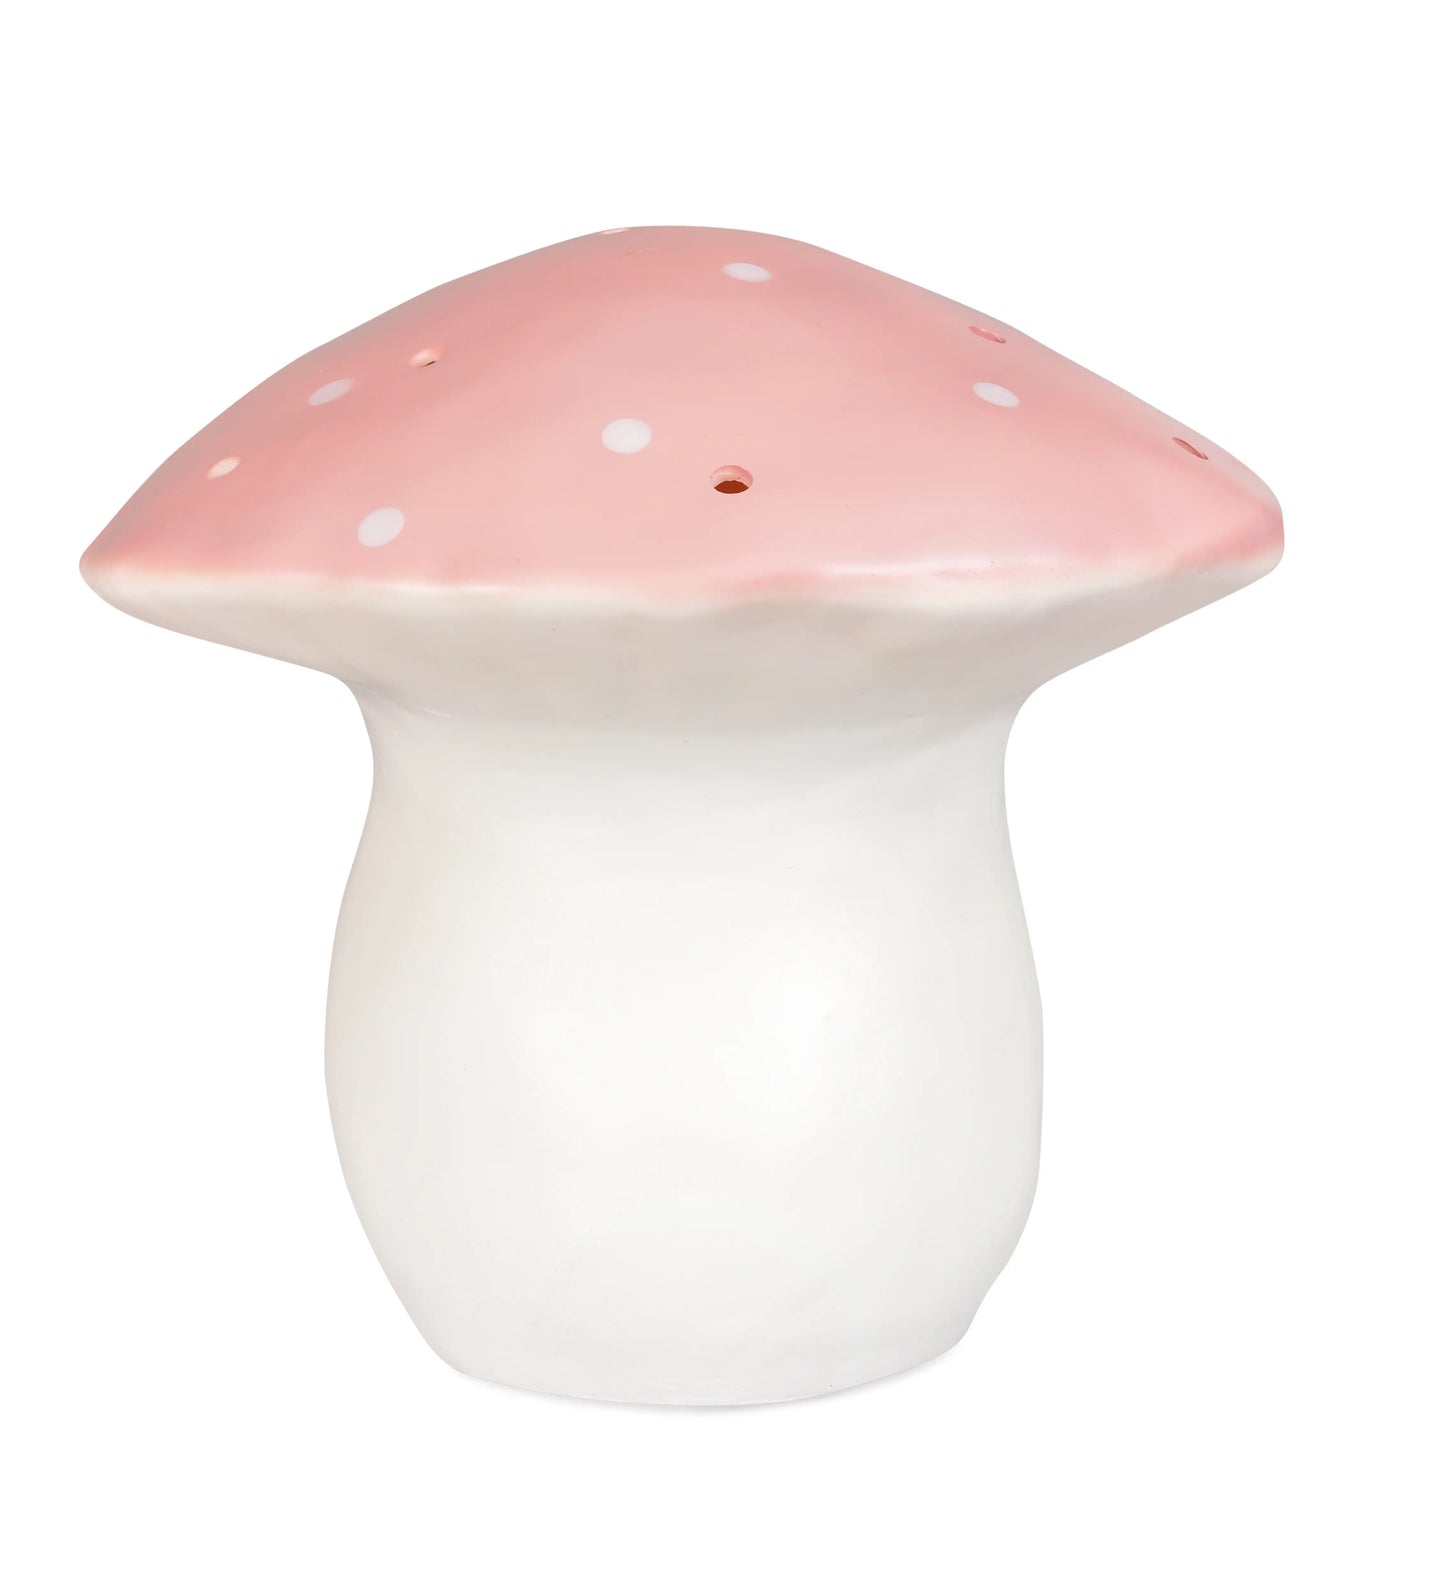 medium mushroom nightlight | vintage pink